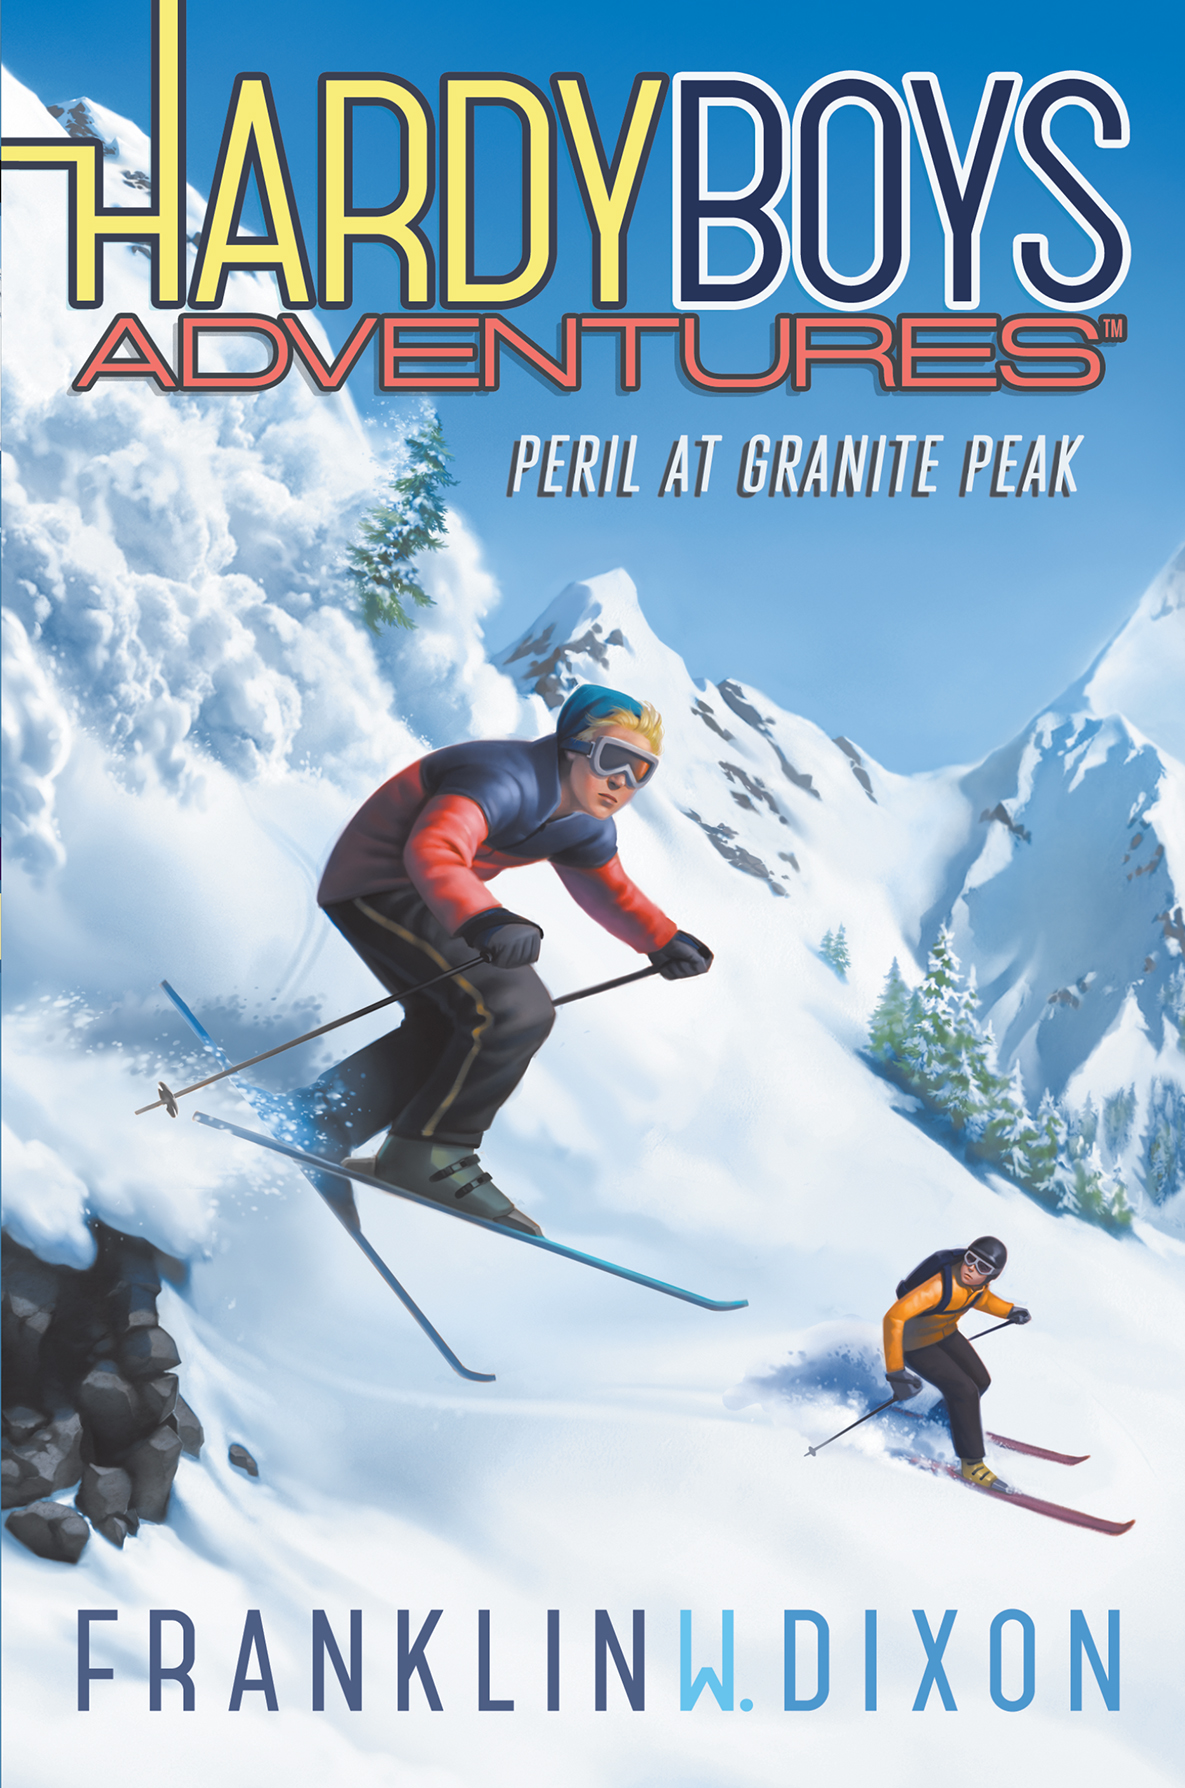 Peril at Granite Peak by Franklin W. Dixon